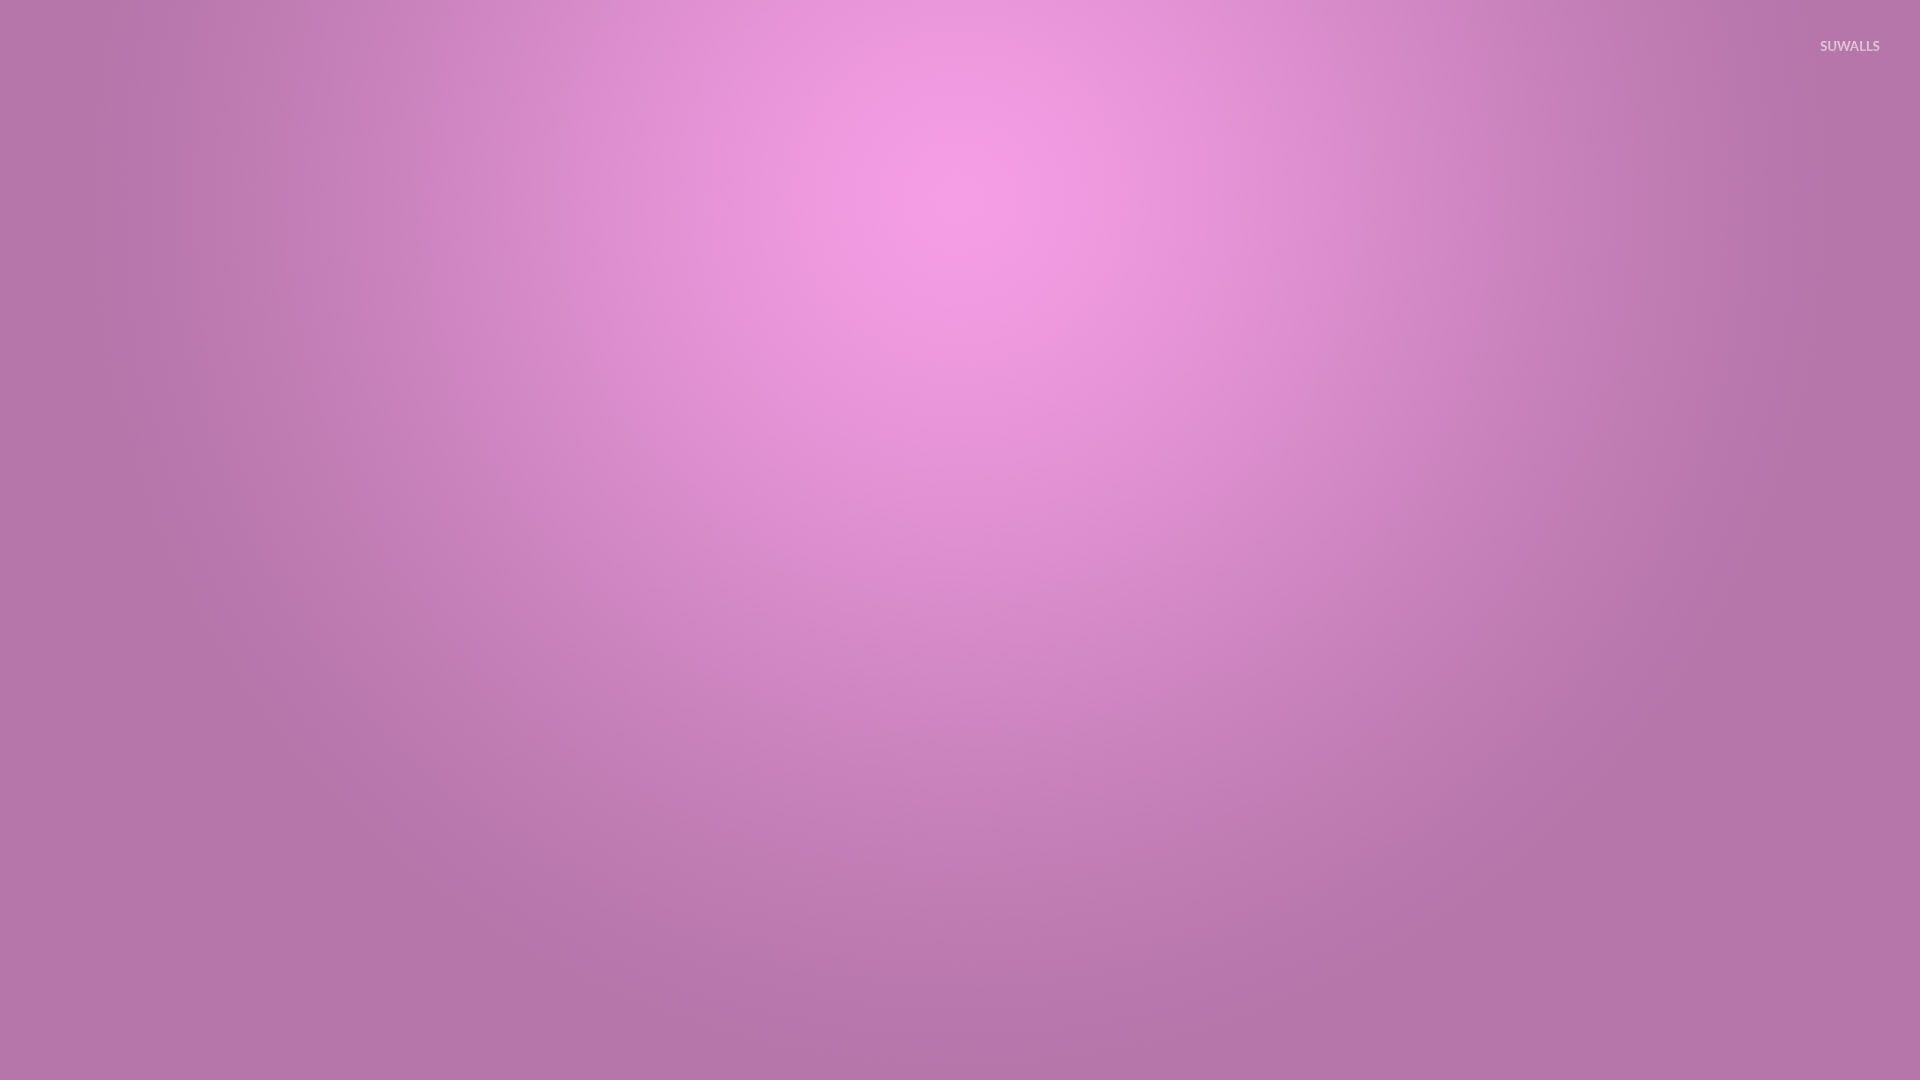 Fondo de pantalla borroso de color rosa pálido - Fondos de pantalla minimalistas - # 51211